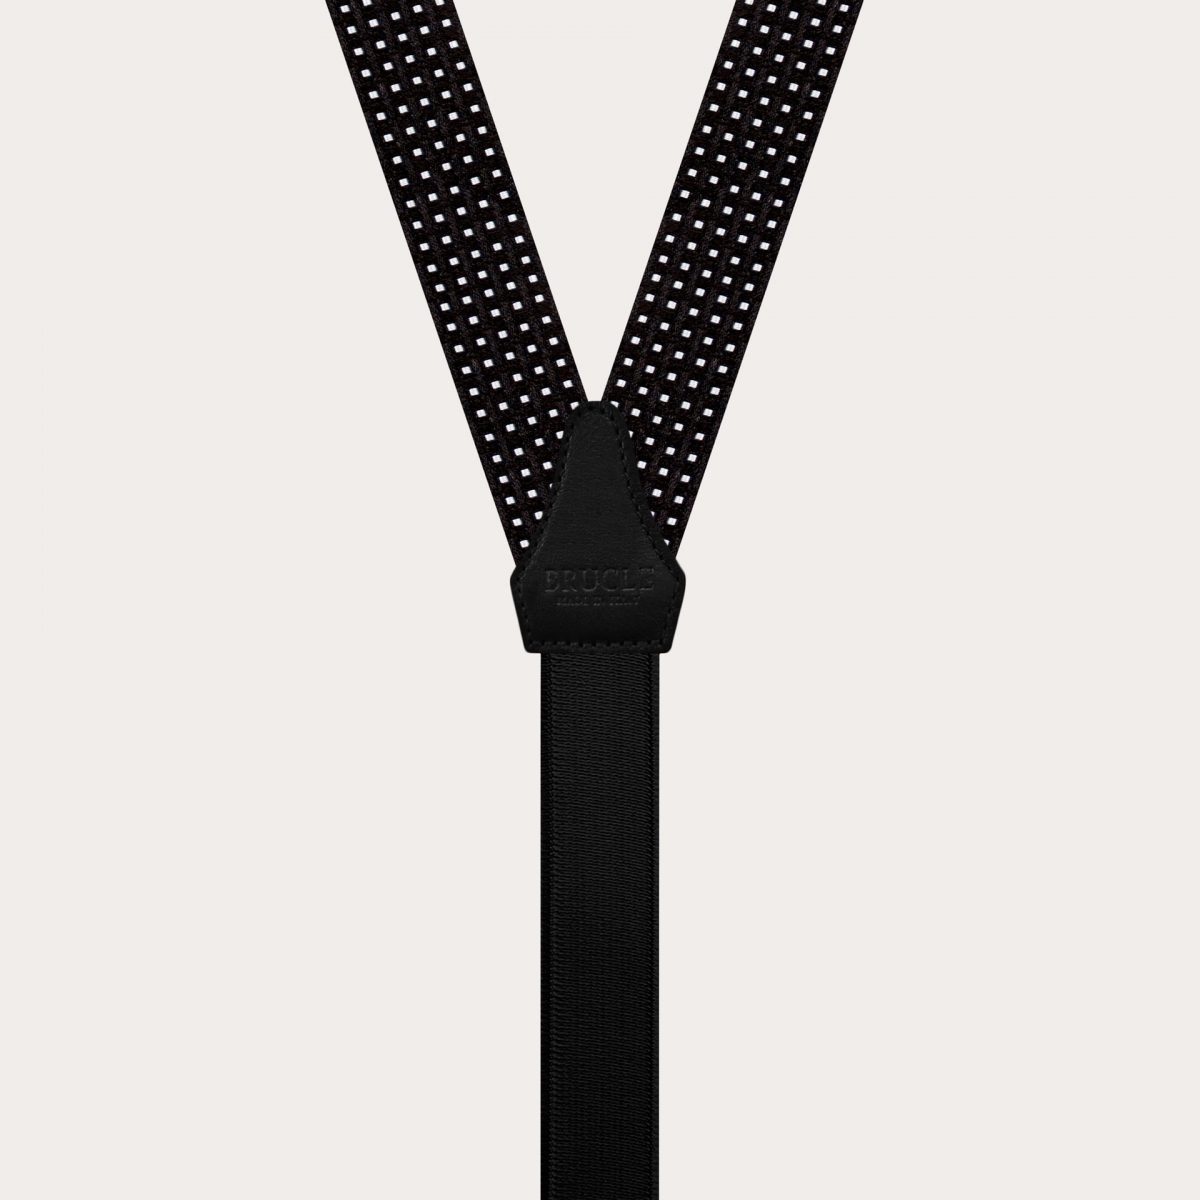 Bretelles larges en soie à motif noire à pois, usage à clip ou boutonniere